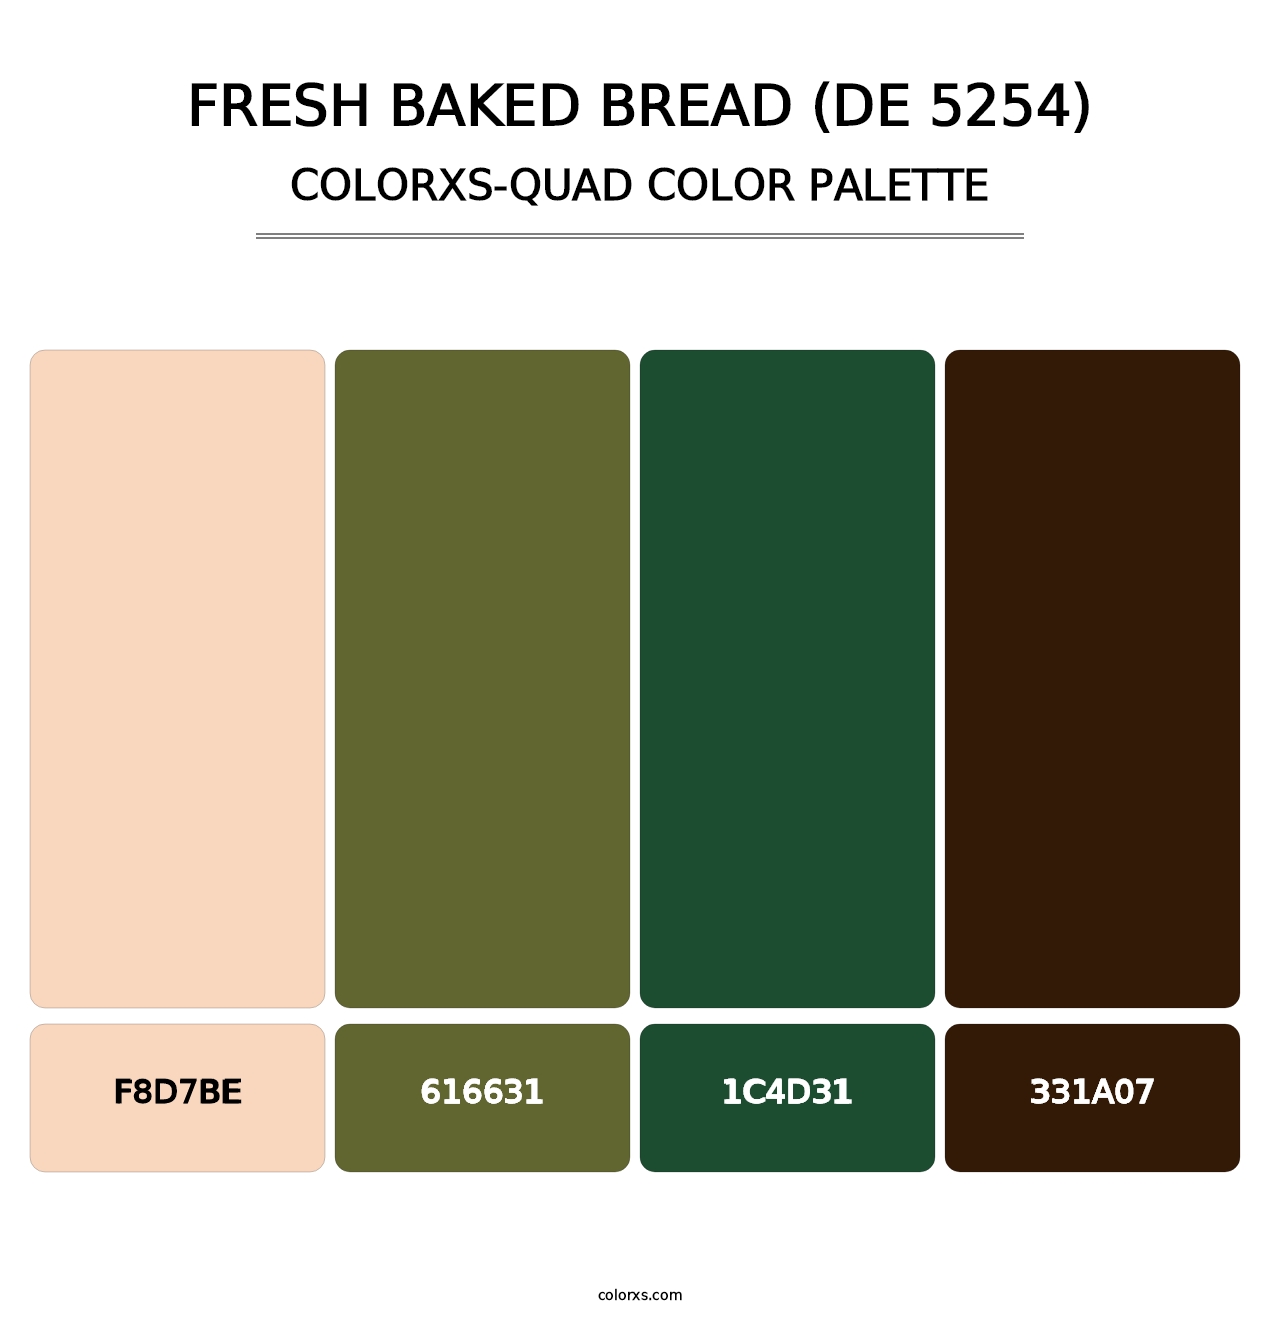 Fresh Baked Bread (DE 5254) - Colorxs Quad Palette